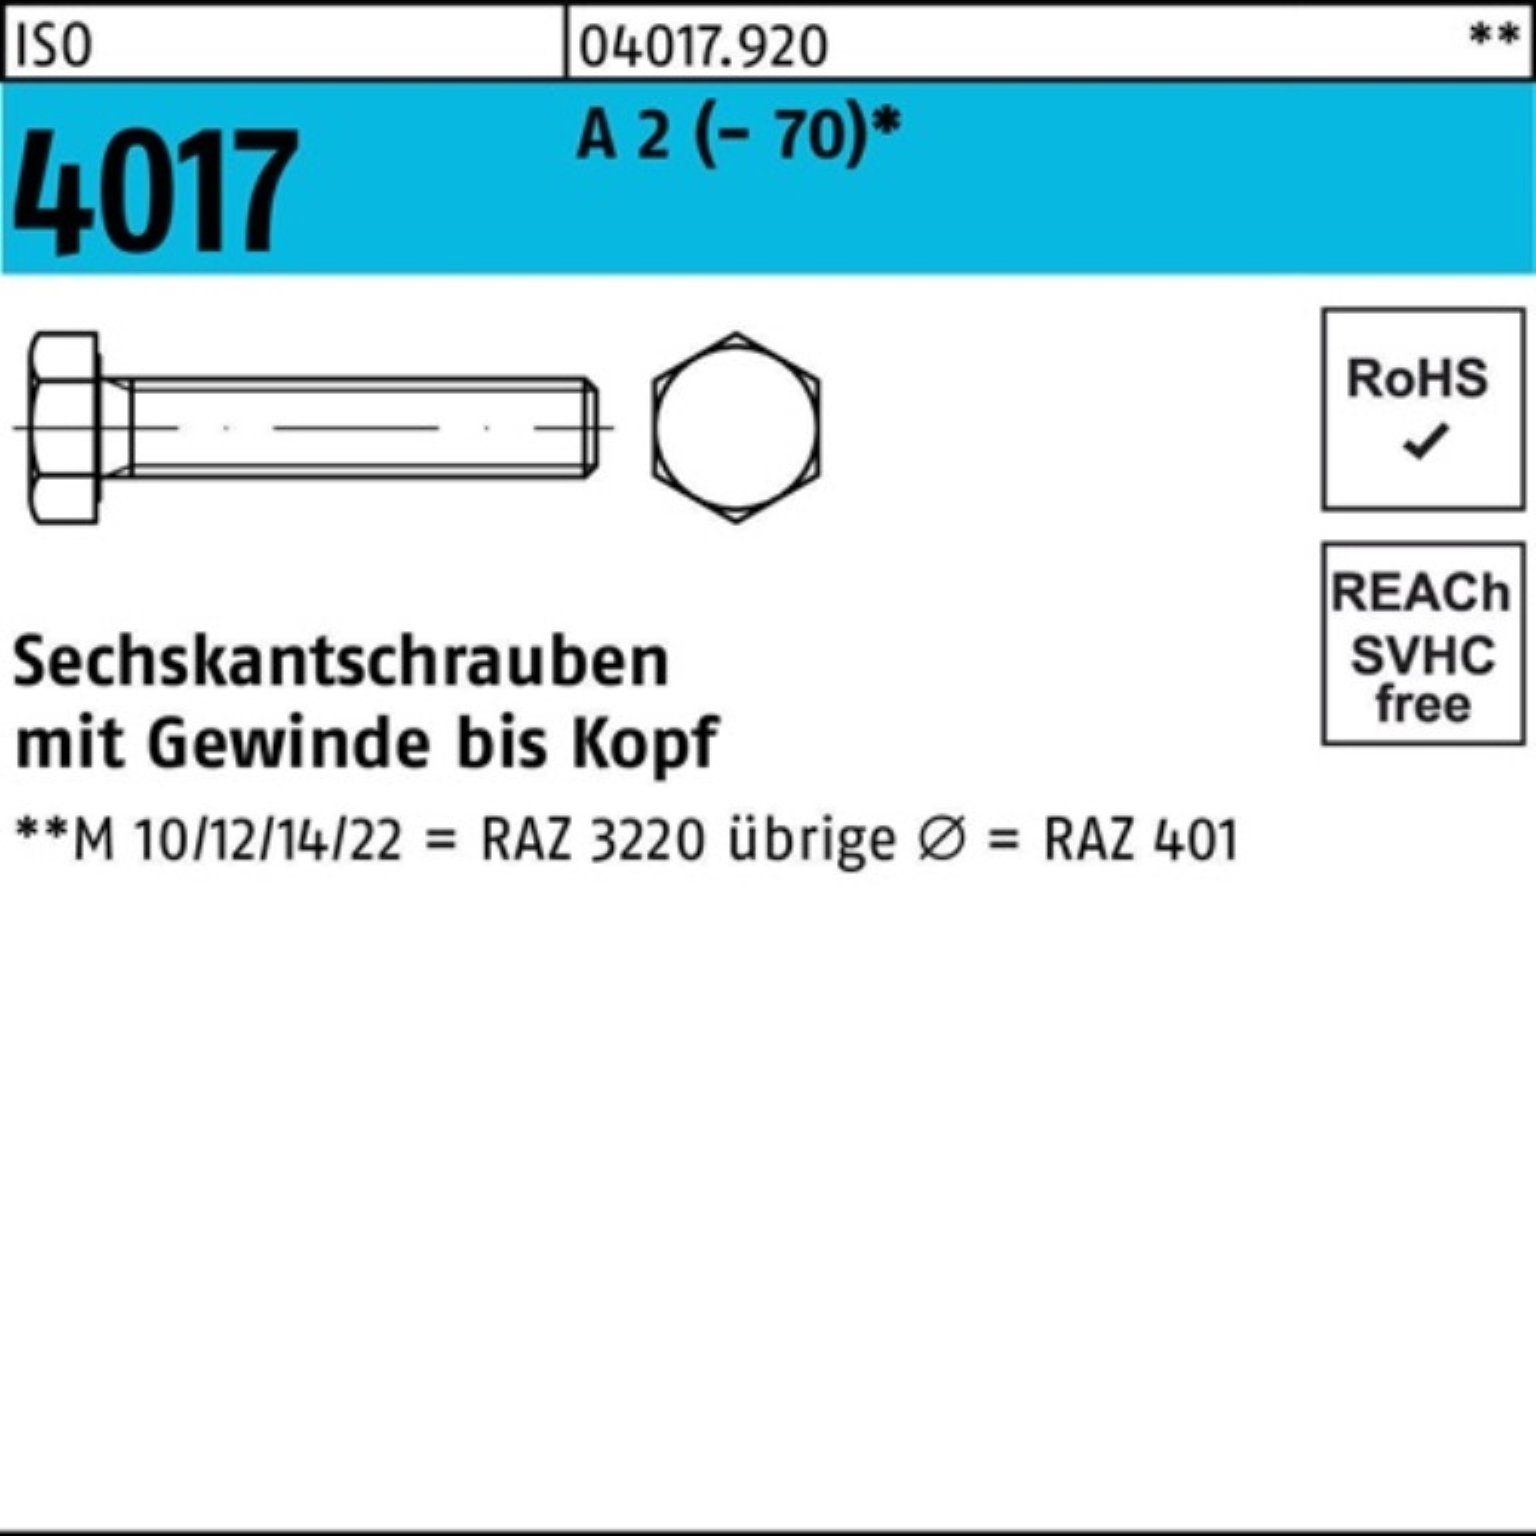 Bufab Sechskantschraube 100er Pack Sechskantschraube ISO 4017 VG M6x 25 A 2 (70) 100 Stück